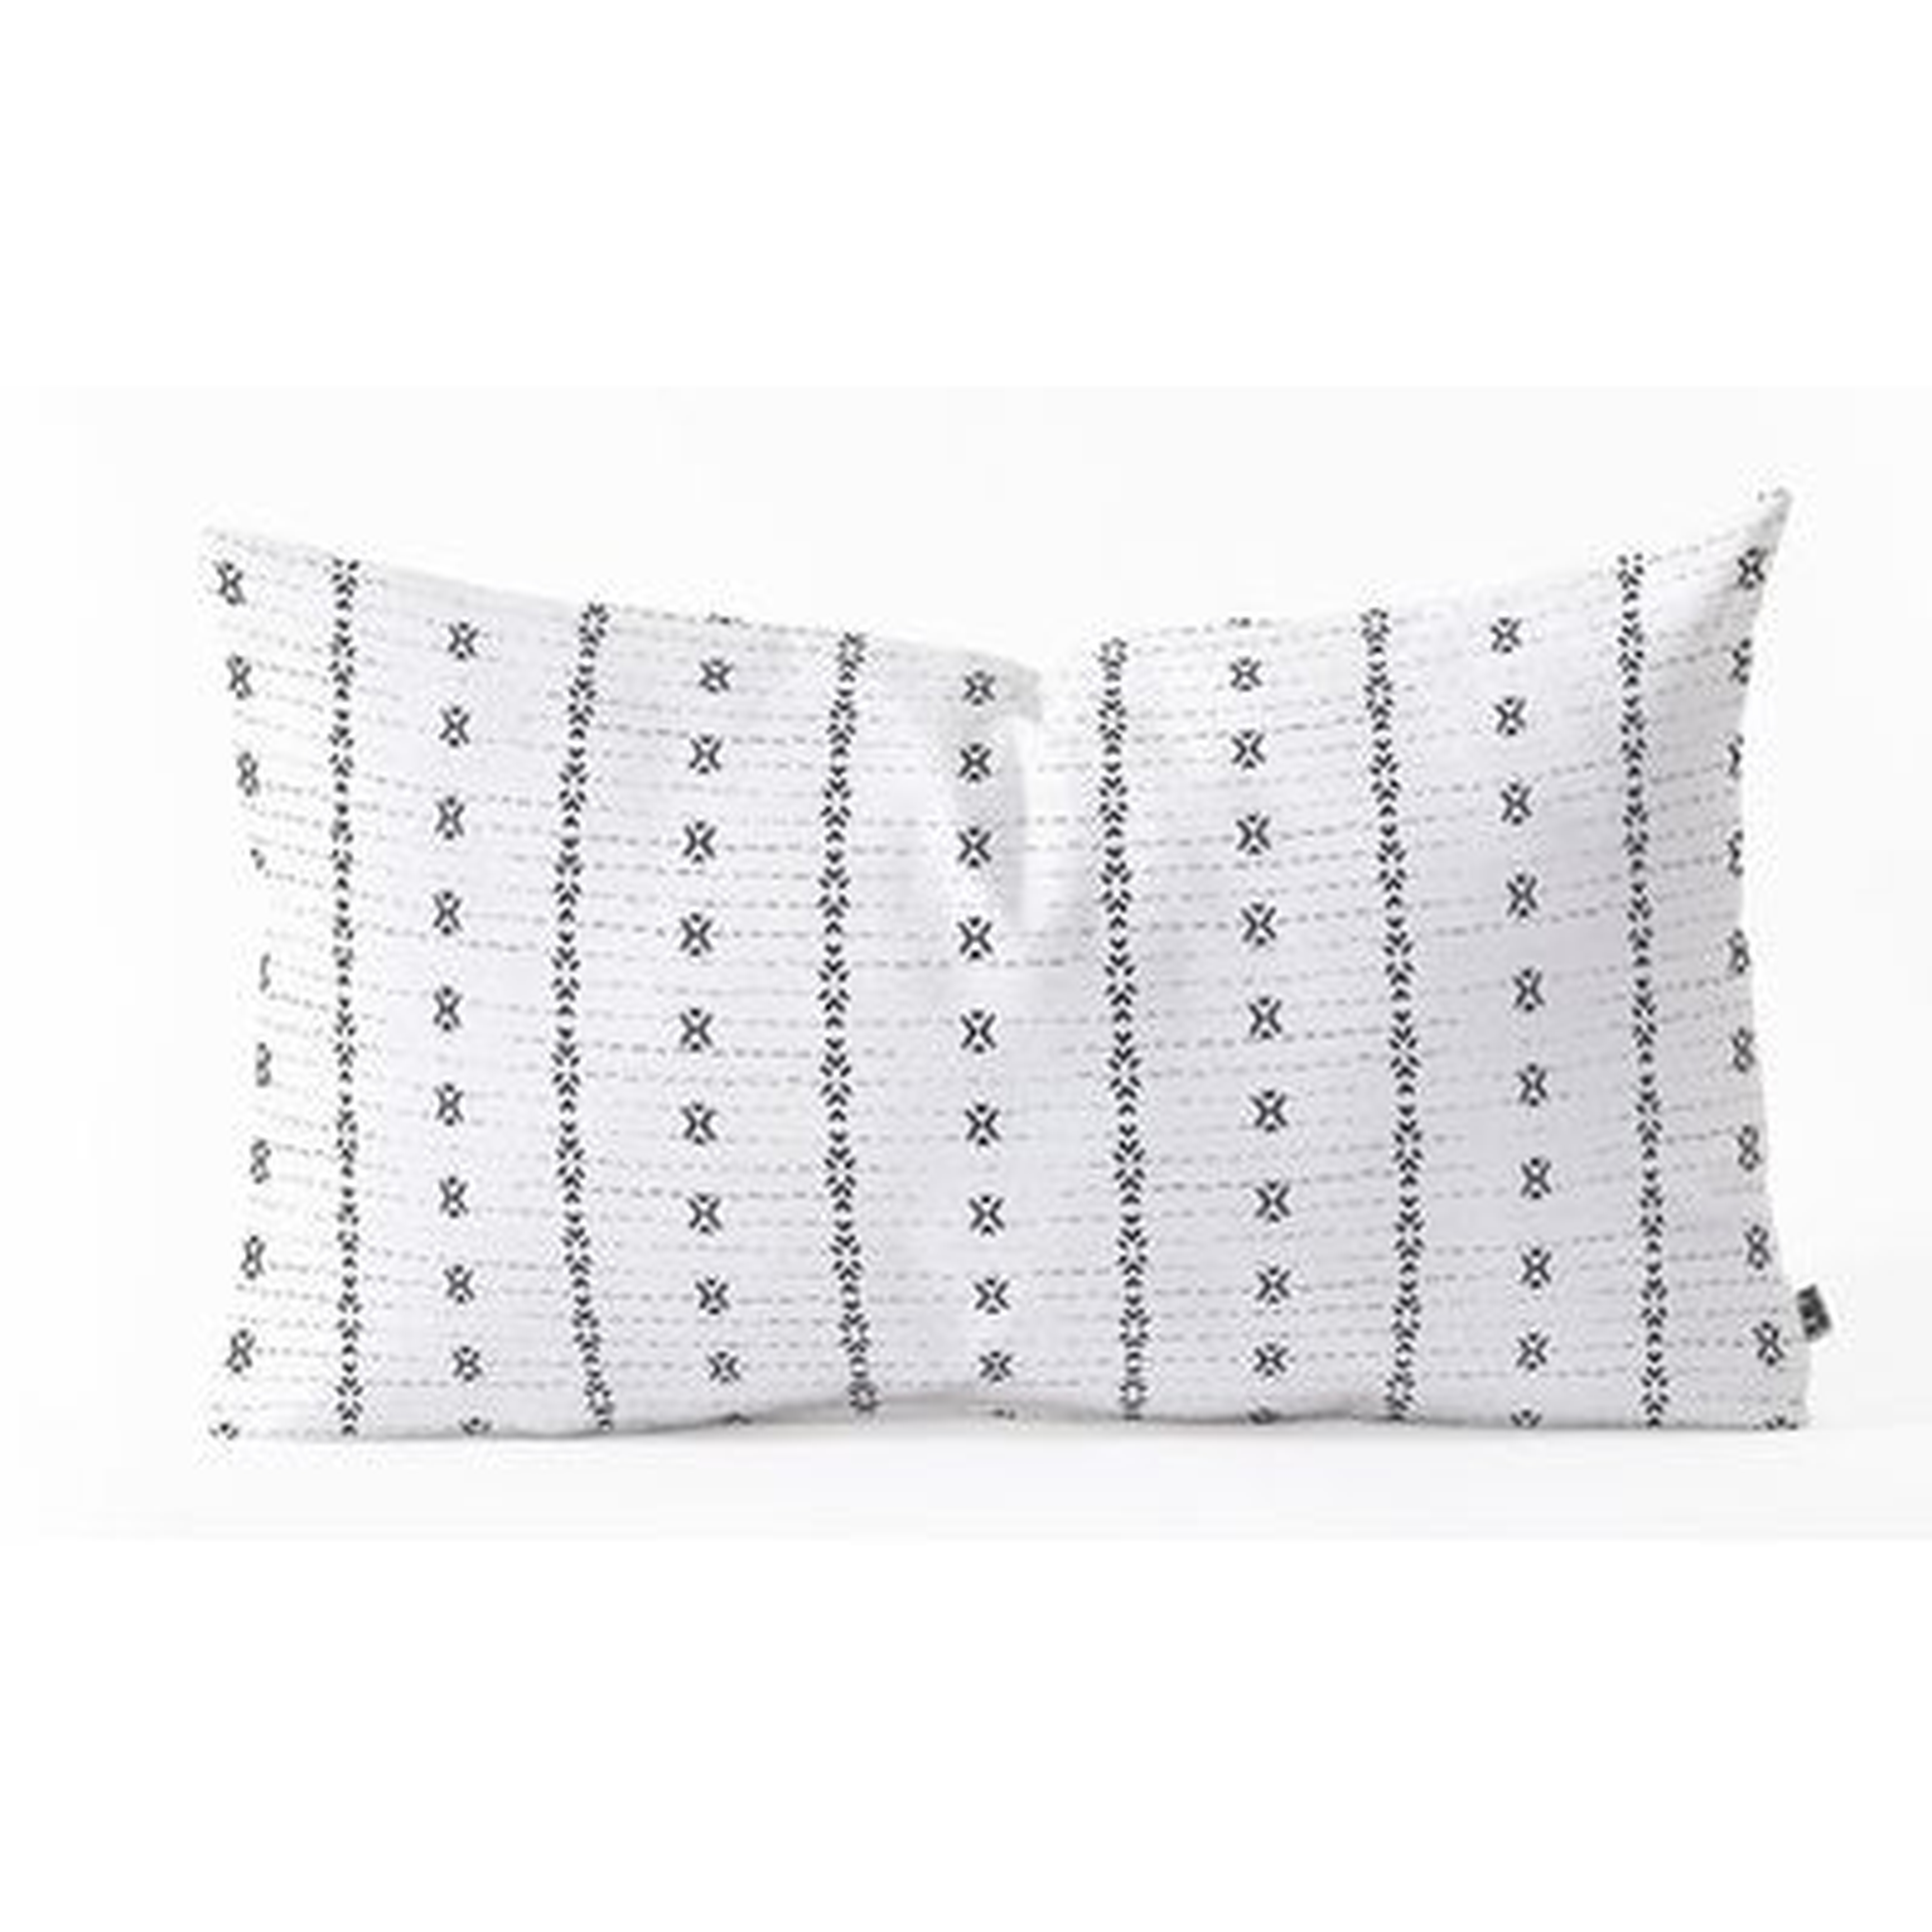 Lumbar Pillow - Wayfair